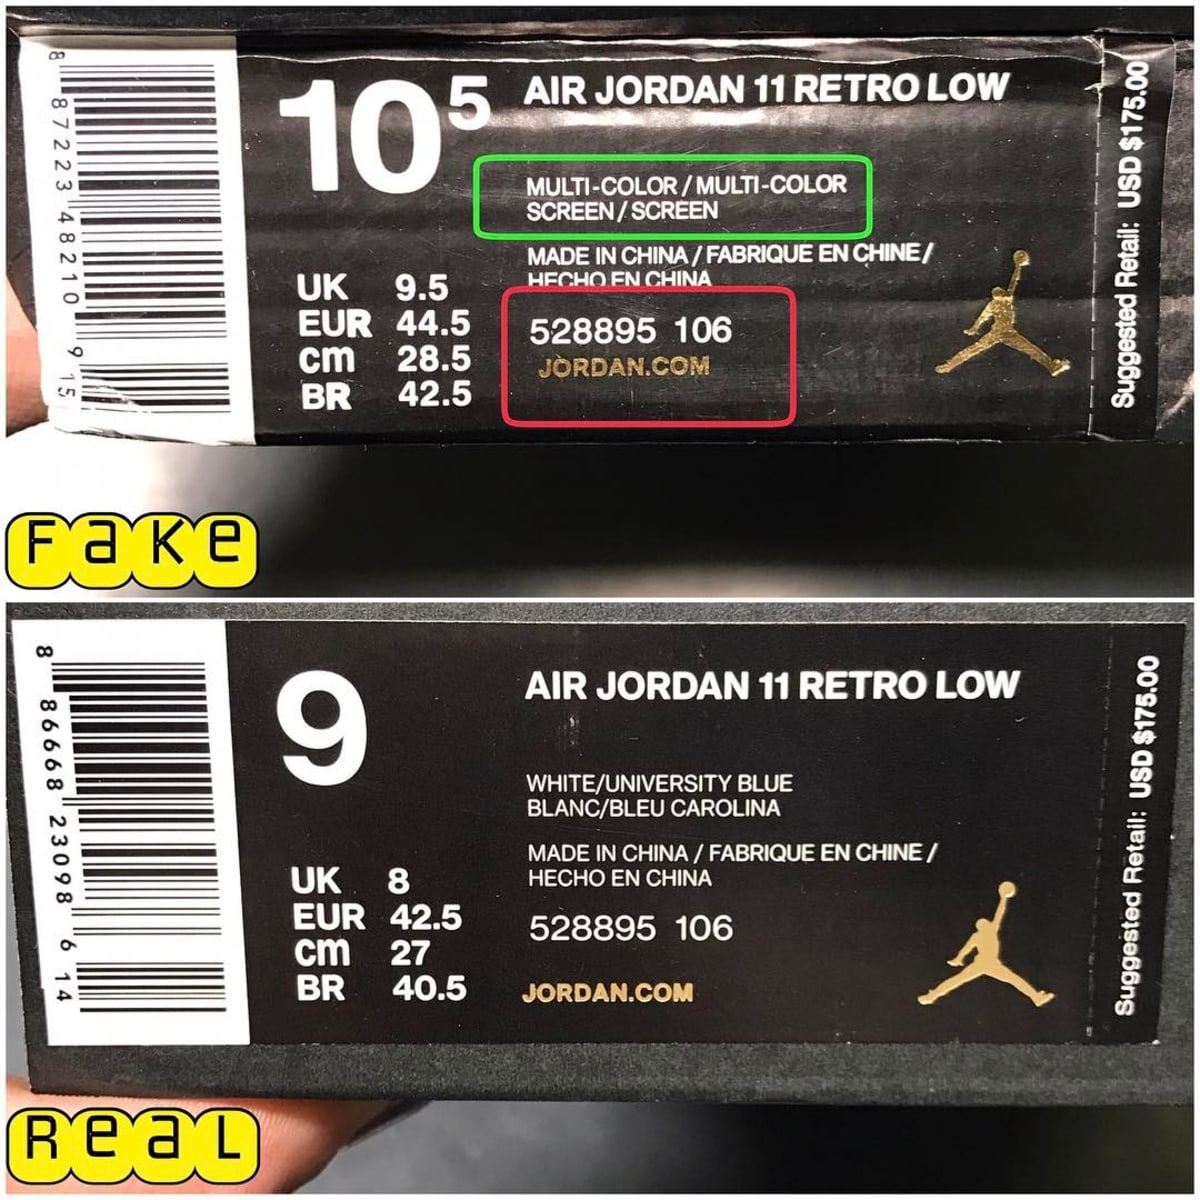 Air Jordan 11 Low UNC Real Fake Legit Check Box Tag - Air Jordan 11 Low